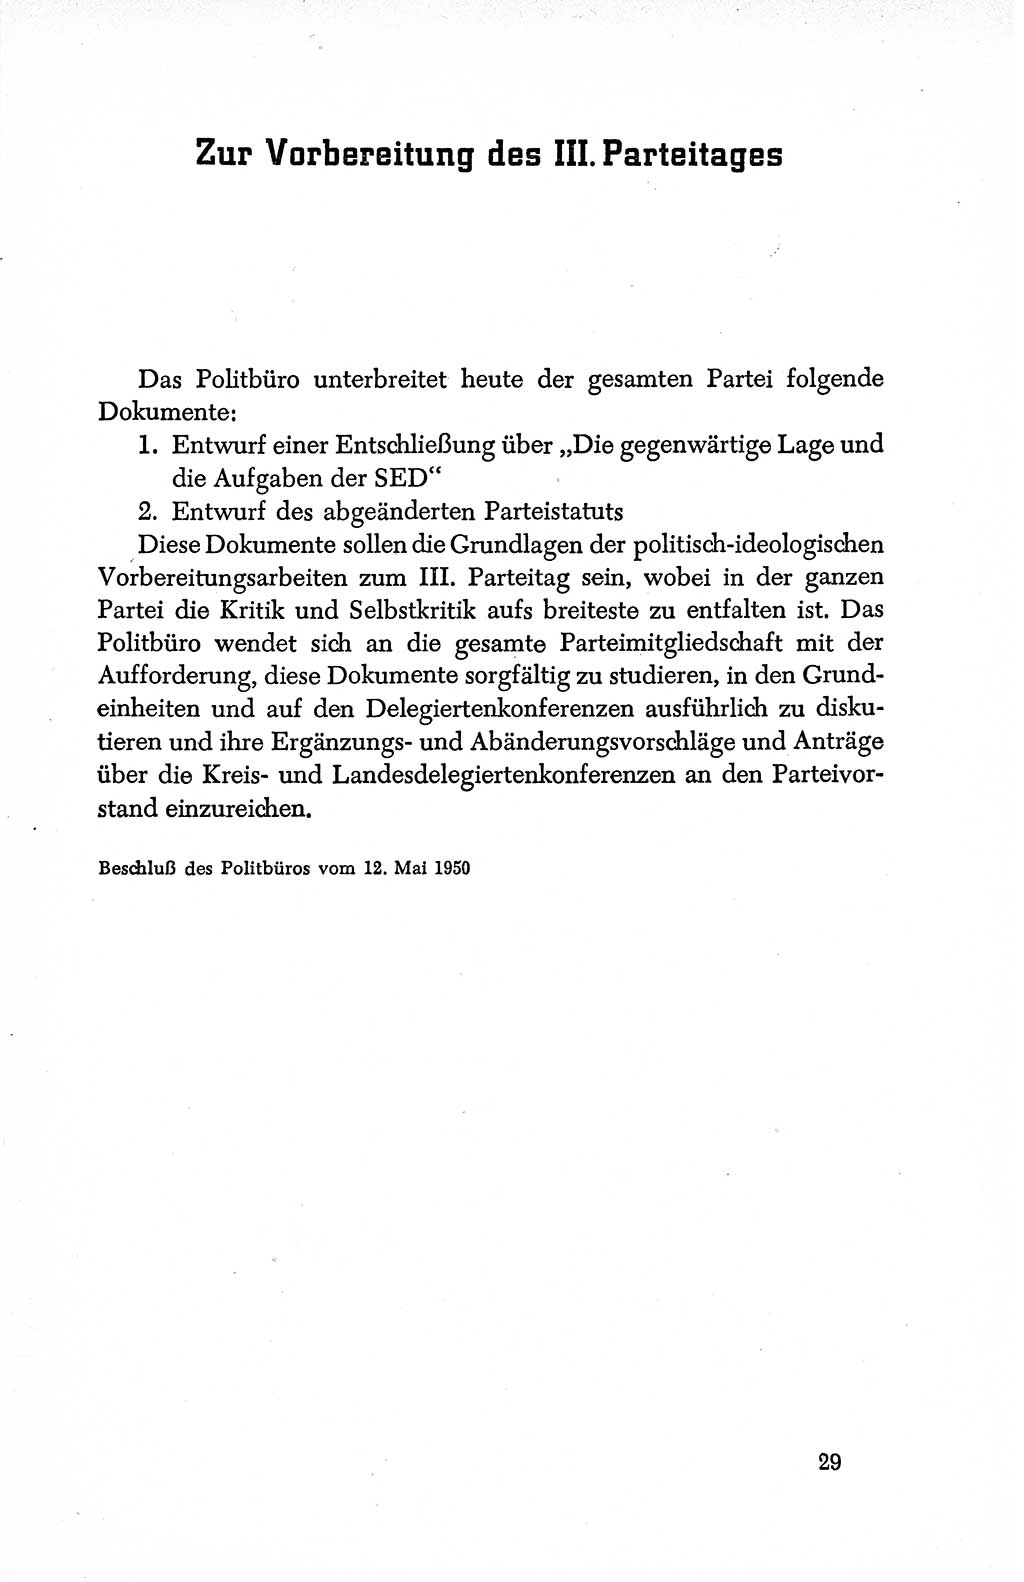 Dokumente der Sozialistischen Einheitspartei Deutschlands (SED) [Deutsche Demokratische Republik (DDR)] 1950-1952, Seite 29 (Dok. SED DDR 1950-1952, S. 29)